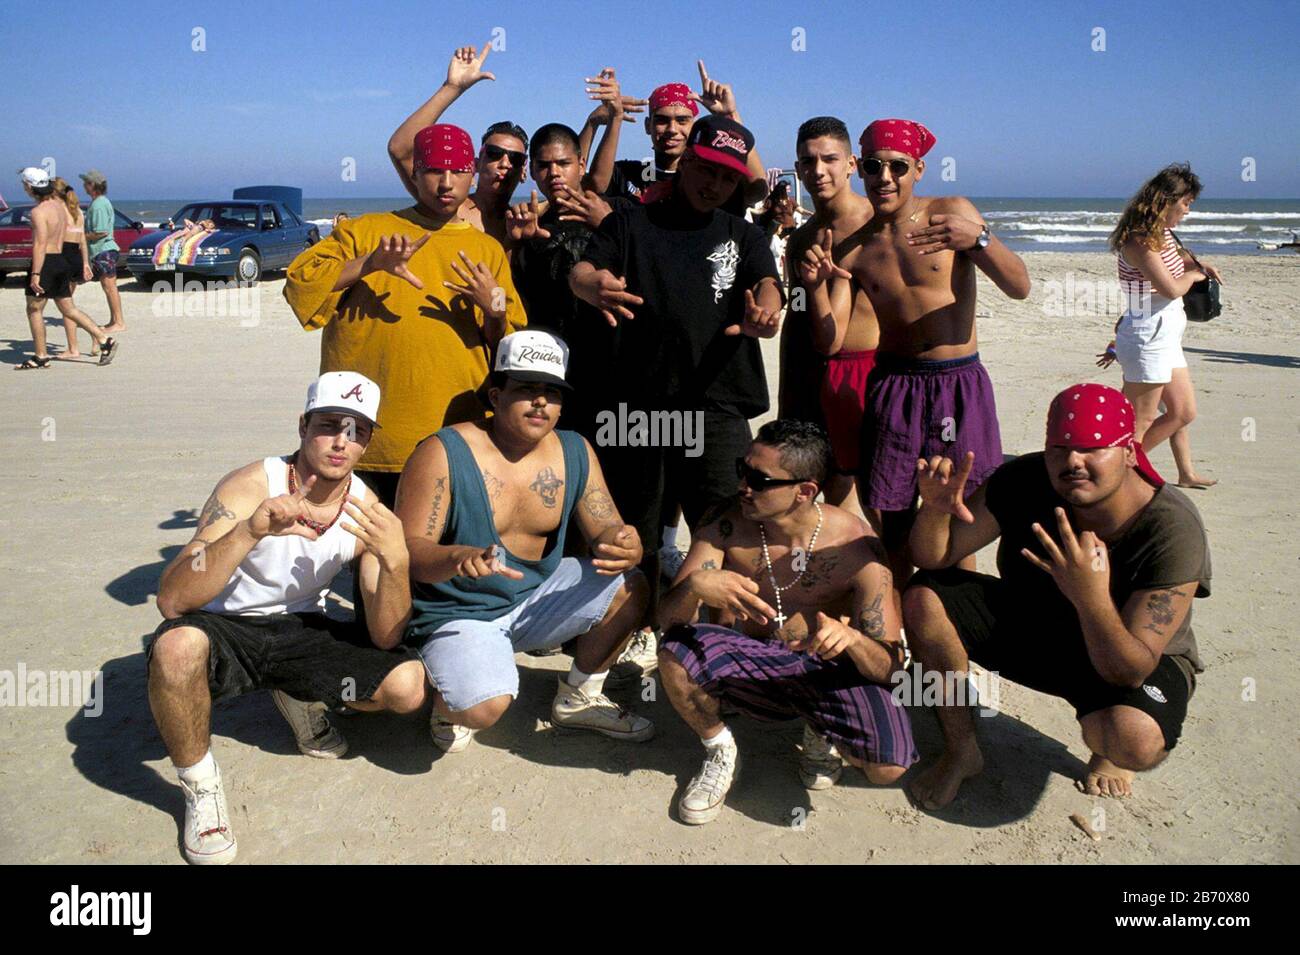 Corpus Christi, Texas États-Unis: Les adolescents membres d'un gang flash des panneaux à la main sur la plage pendant les vacances de printemps. ©Bob Daemmrich Banque D'Images